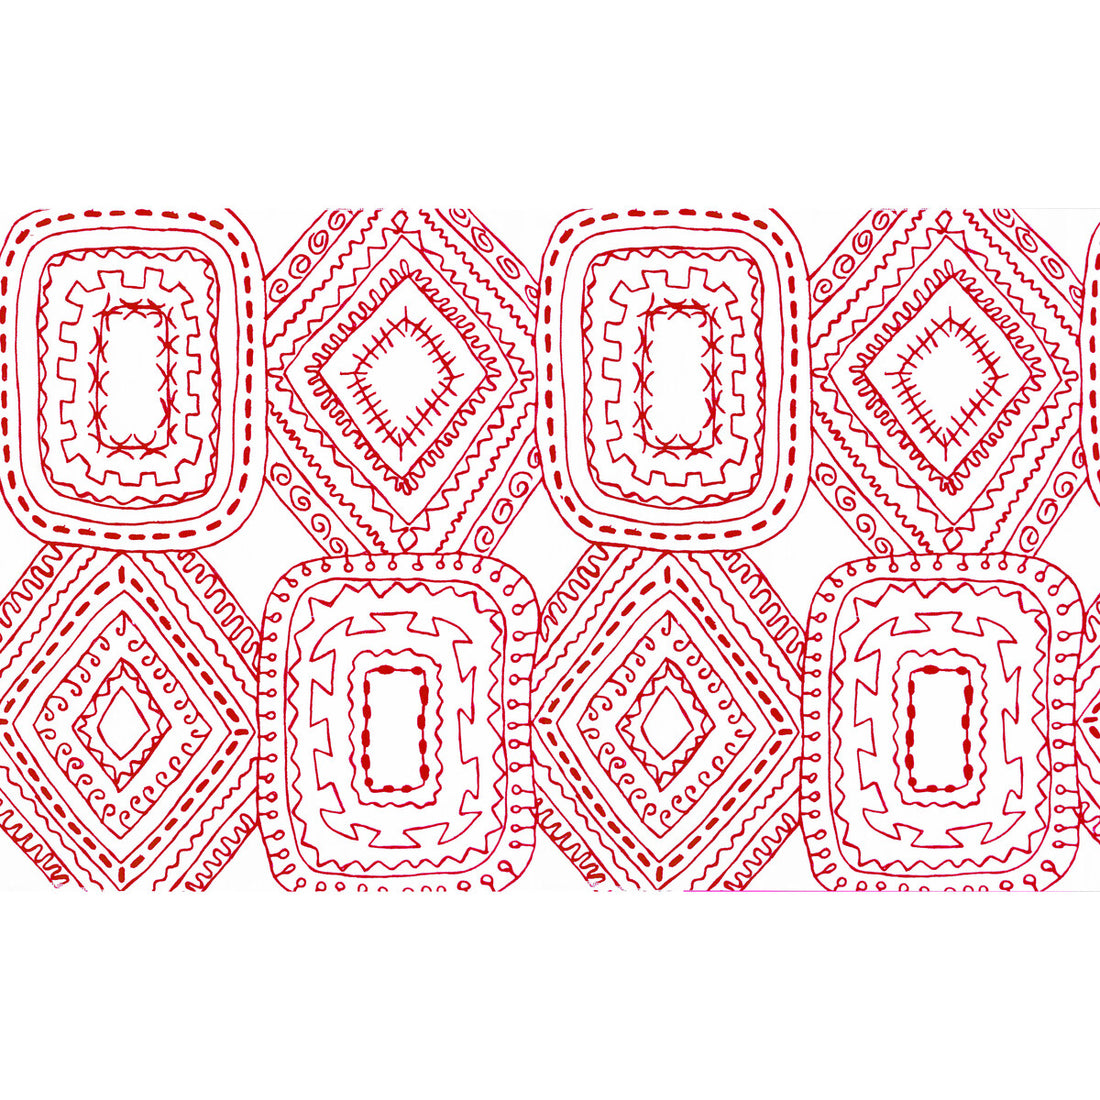 Santo Domingo fabric in rojo color - pattern GDT5570.002.0 - by Gaston y Daniela in the Gaston Luis Bustamante collection